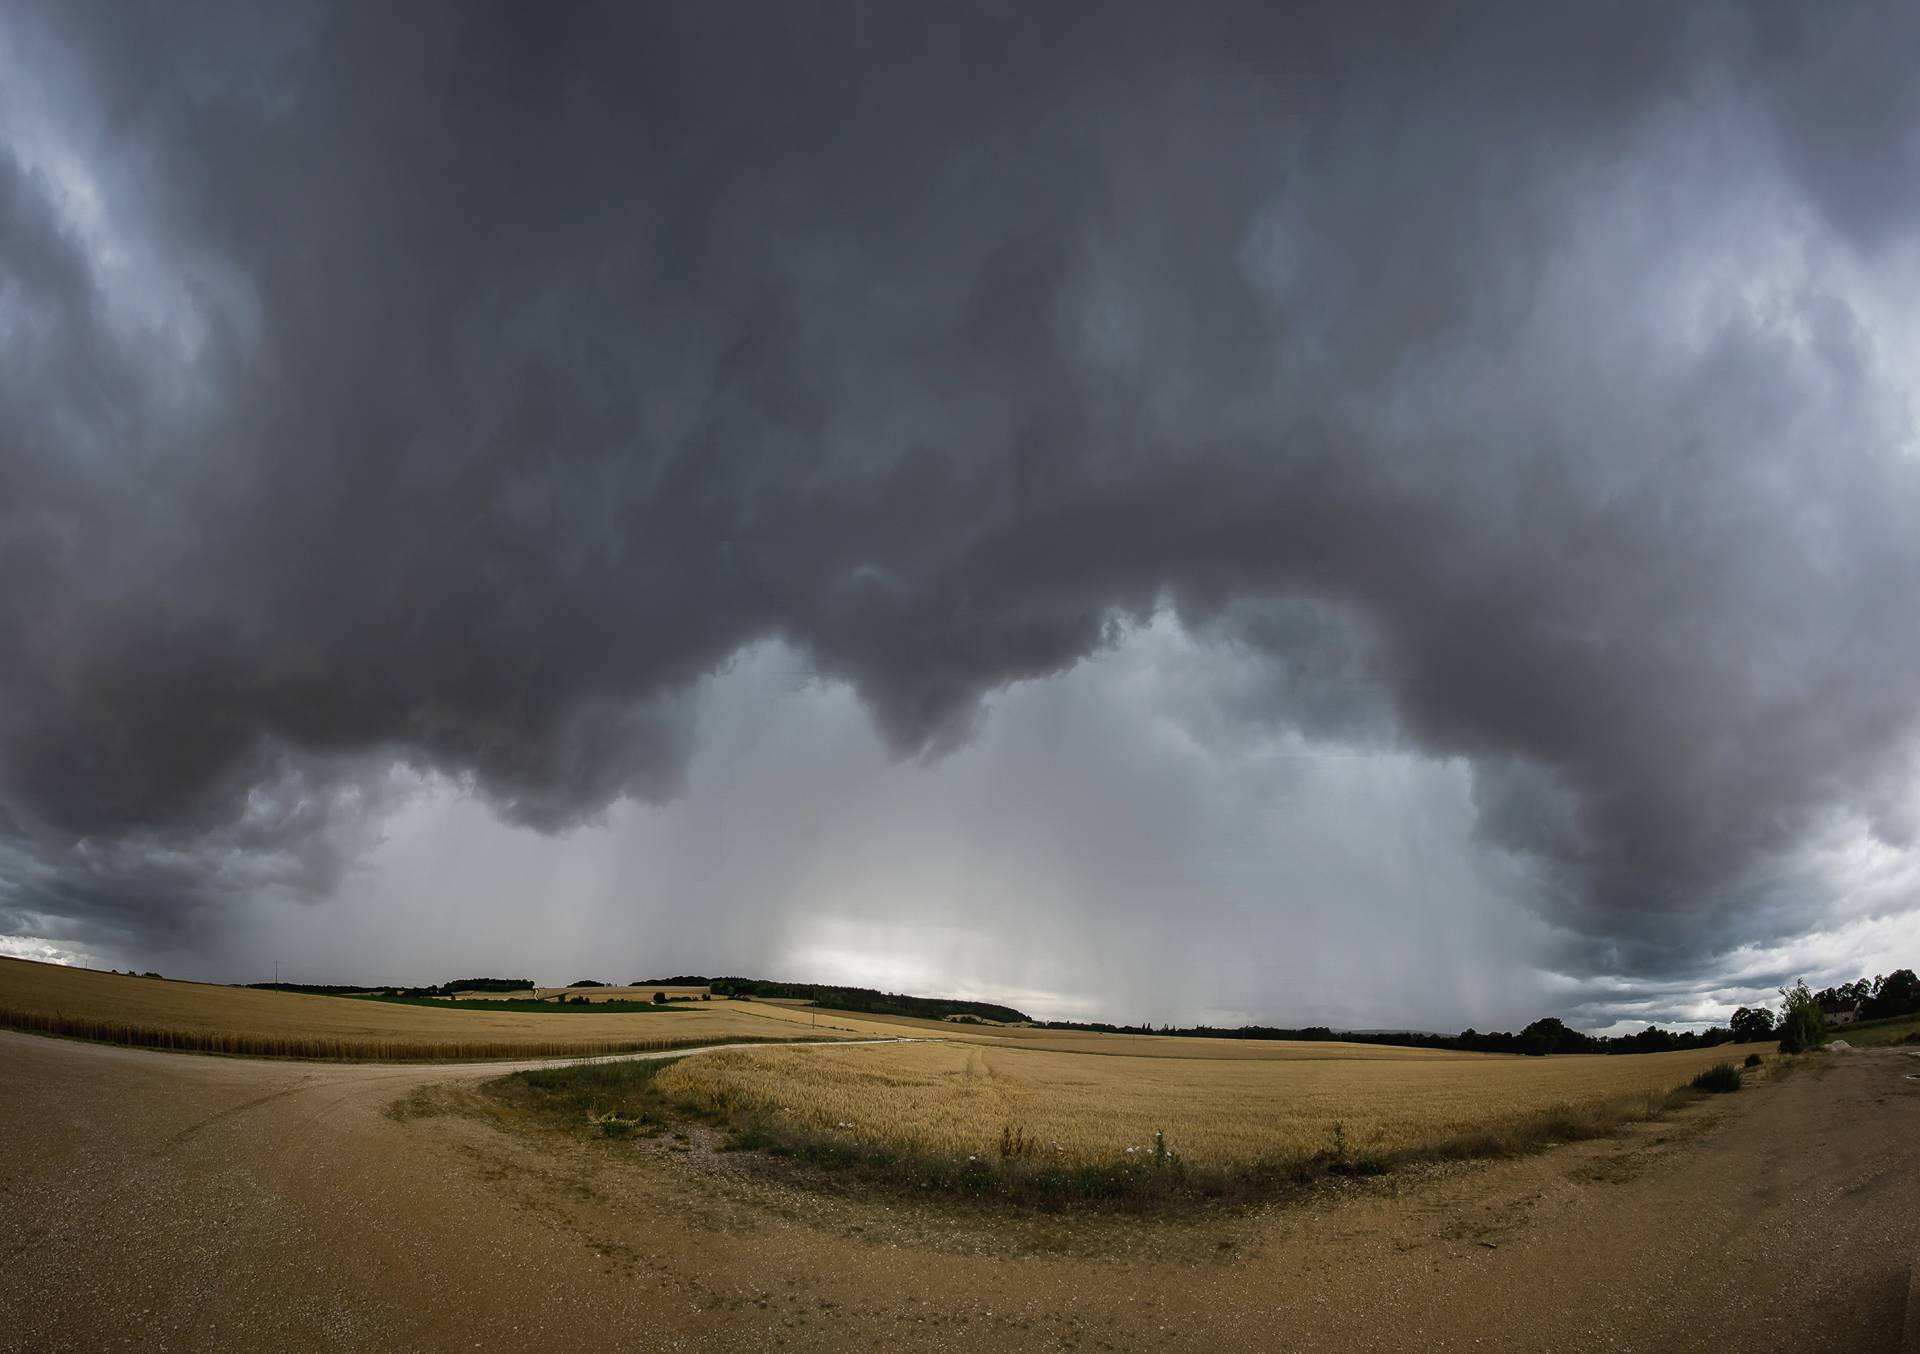 Panorama réalisé lors d'une averse orageuse cet après midi au Nord de Dijon. - 29/06/2017 16:00 - Guillaume RANDON